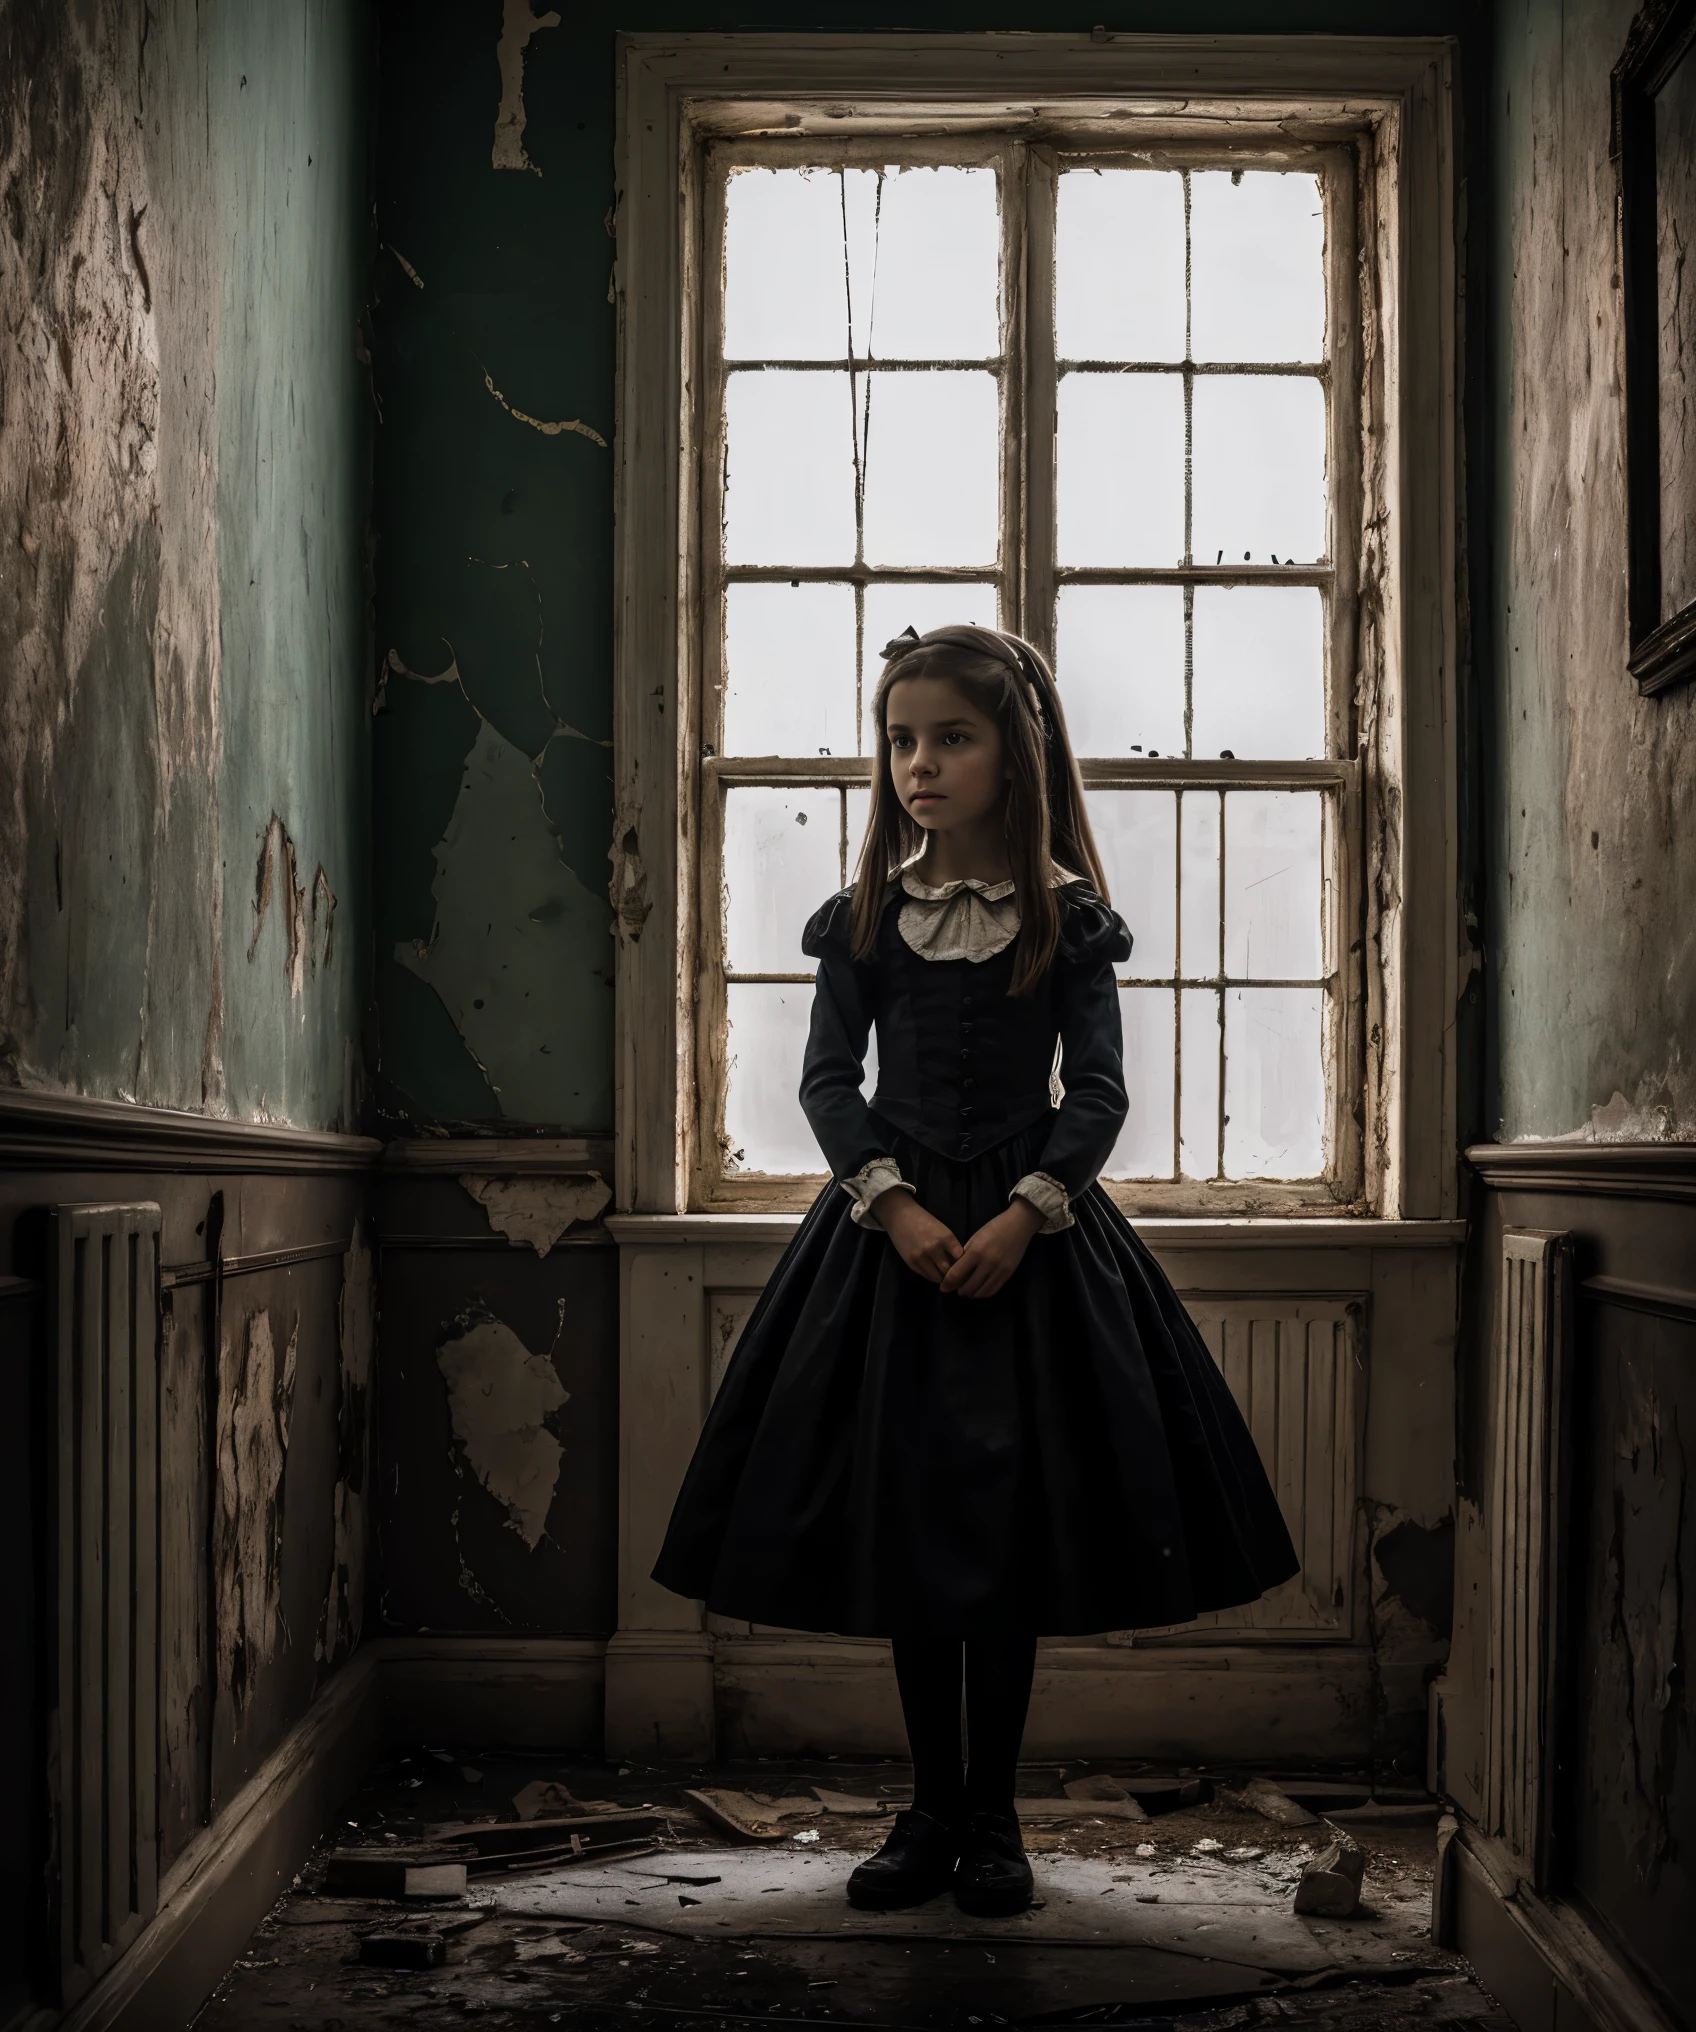 非常詳細, 瘋人院中一個年輕女孩的逼真照片, 愛麗絲來自 "愛麗絲夢遊仙境", 黑暗而詭異的氣氛, 複雜的細節，例如破裂的牆壁和剝落的油漆, 靈感來自劉易斯·卡羅爾和蒂姆·伯頓的作品.